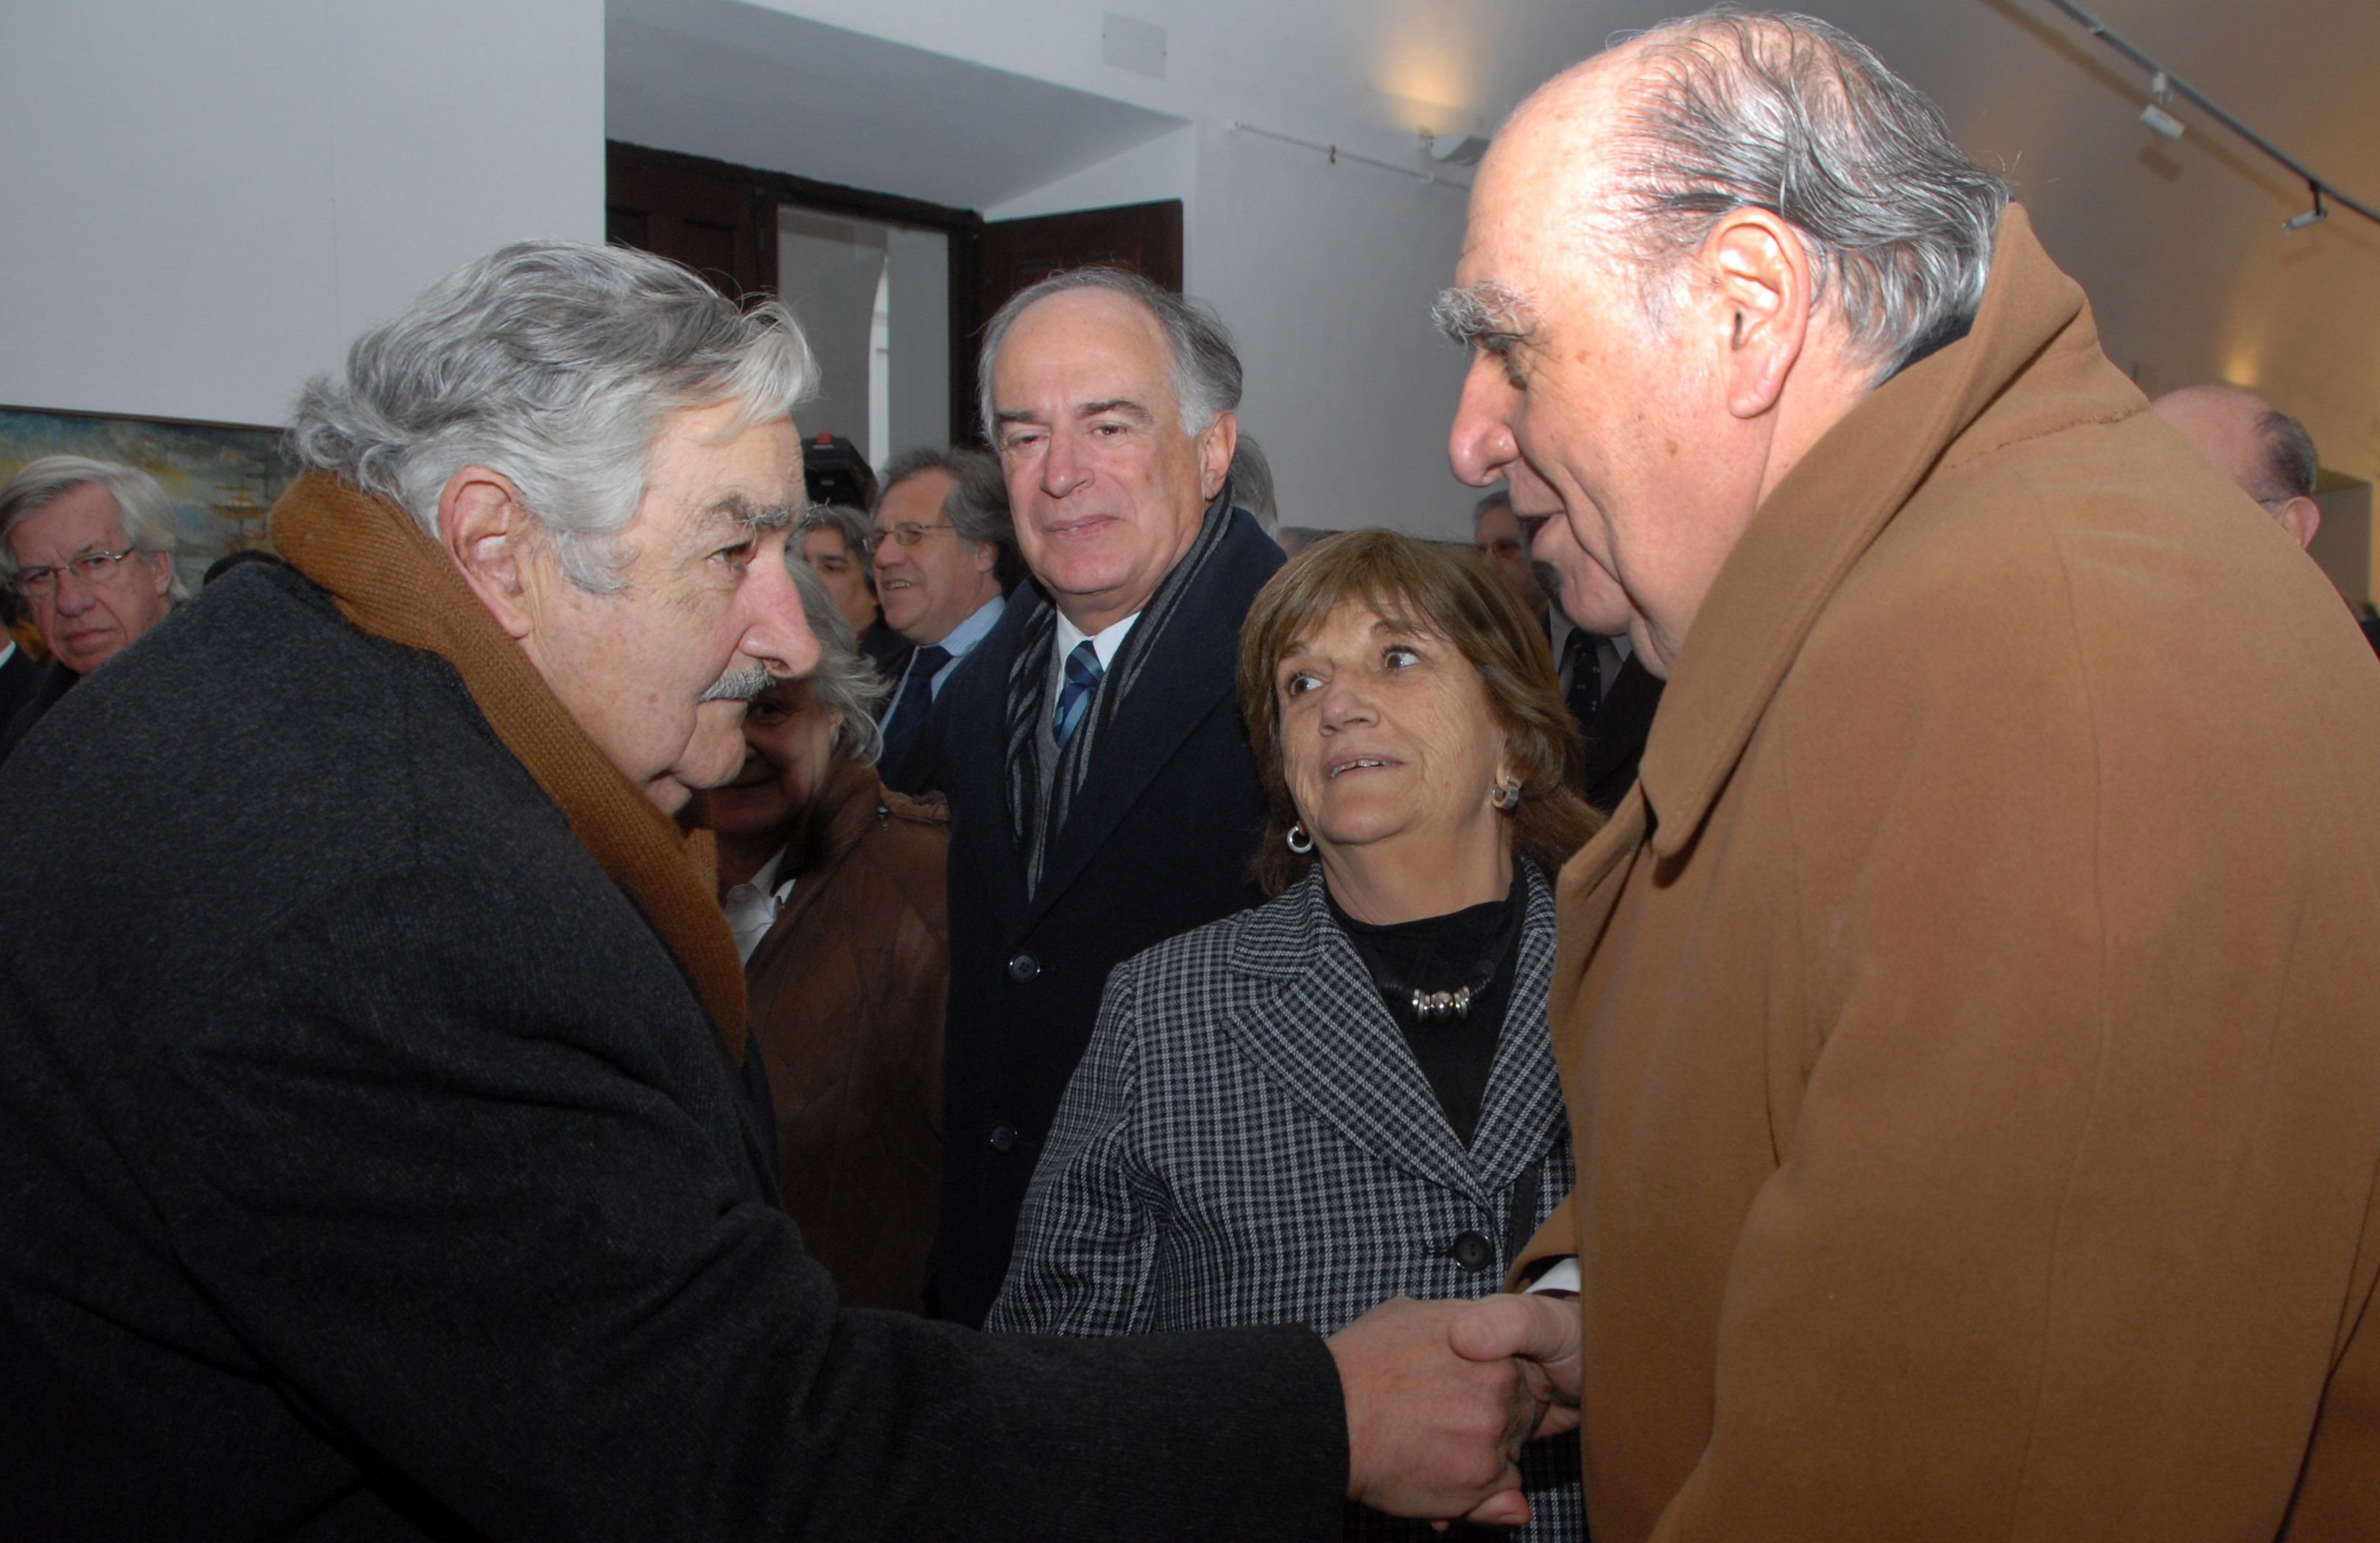 José Mujica y Julio María Sanguinetti